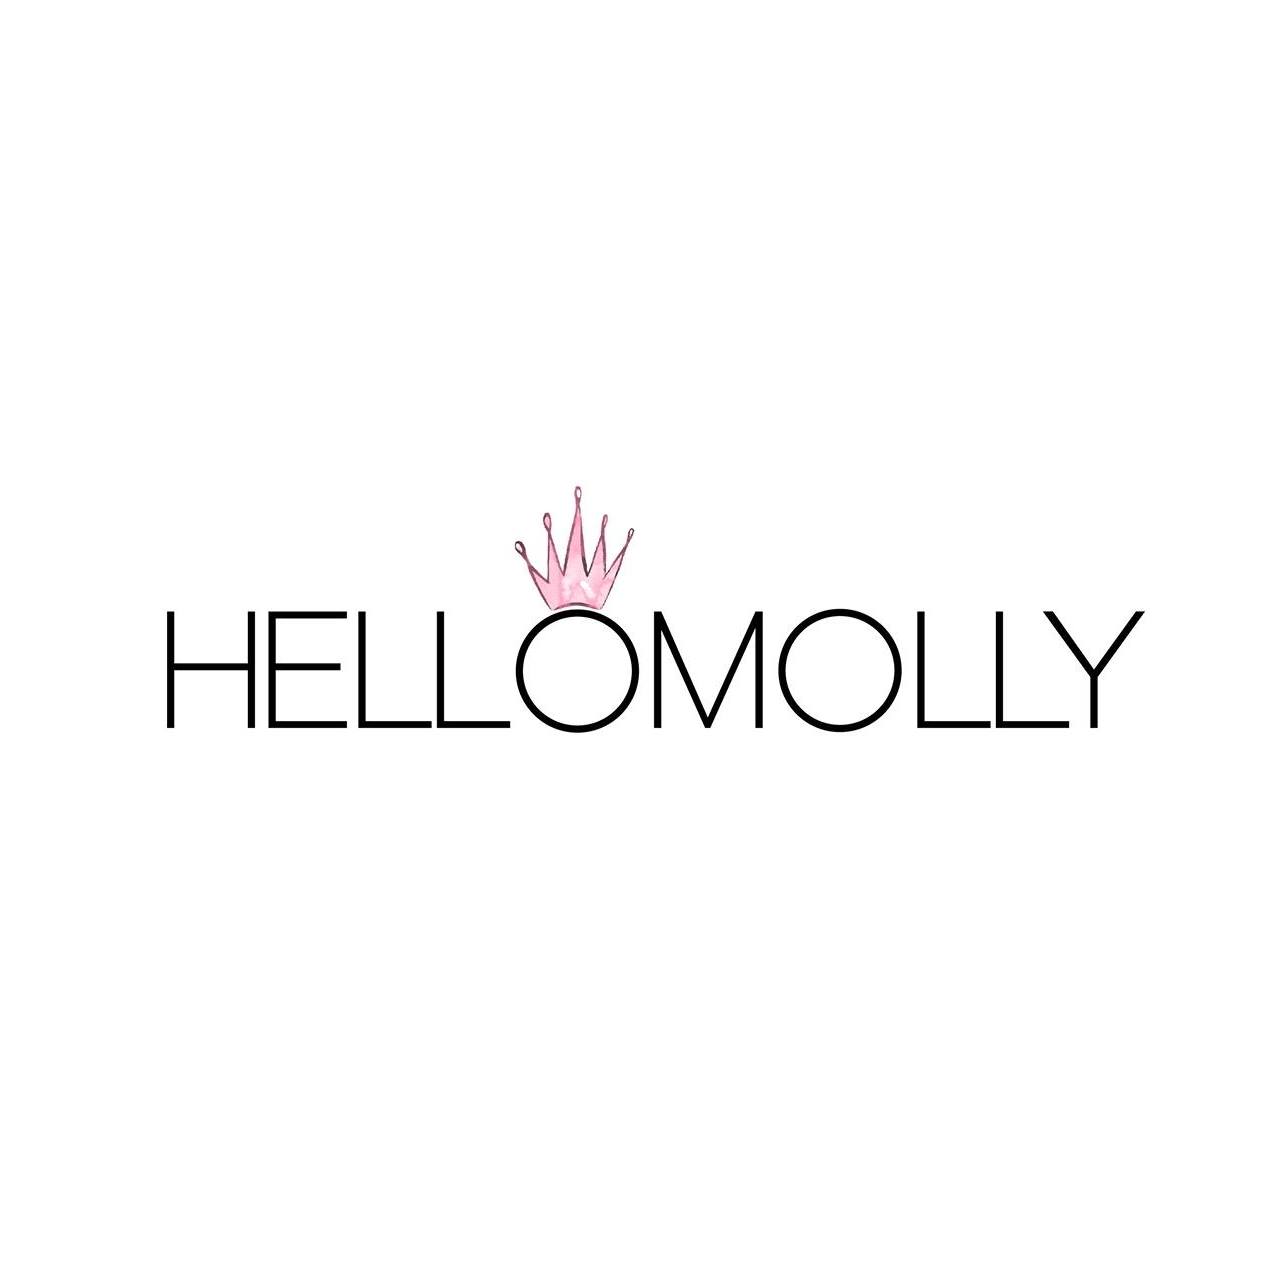 Company logo of Hello Molly